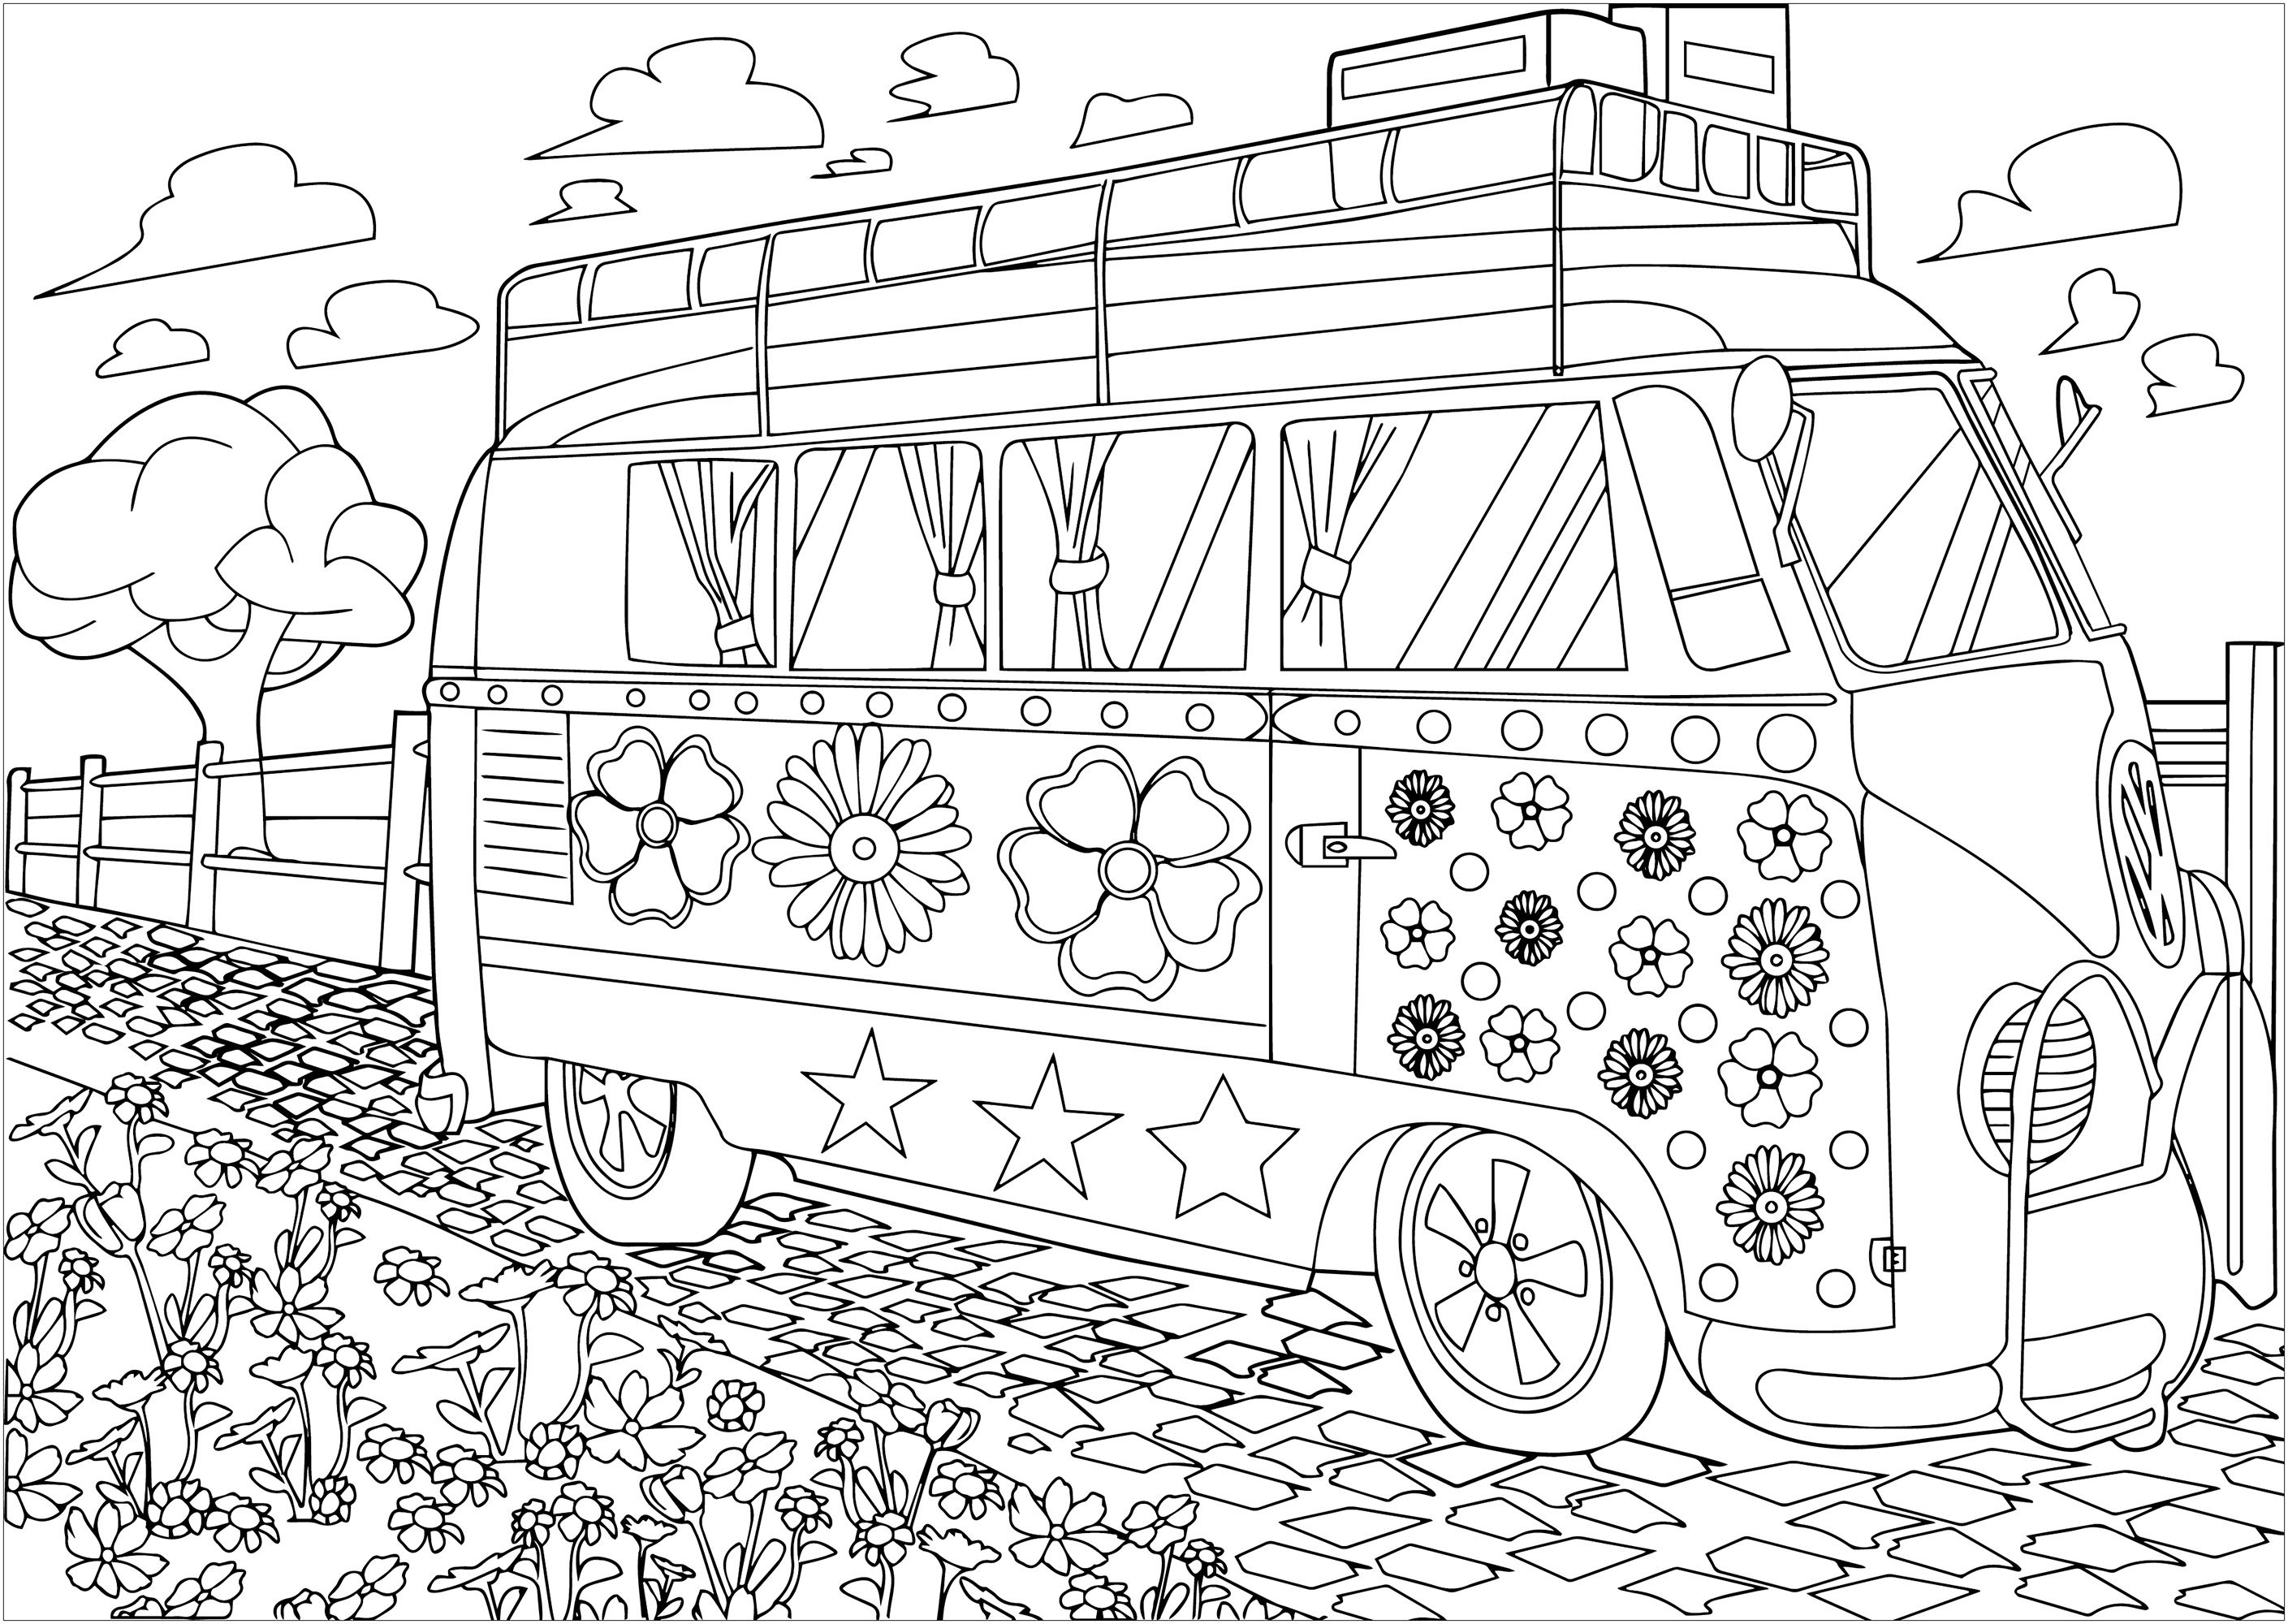 Le combi Volkswagen hippy de Woodstock à colorier. La Volkswagen combi, con la sua vernice colorata e i simboli della pace, divenne il simbolo mobile della controcultura hippie. La sua presenza a Woodstock nel 1969 la rese l'icona immancabile di quest'epoca di liberazione e musica.